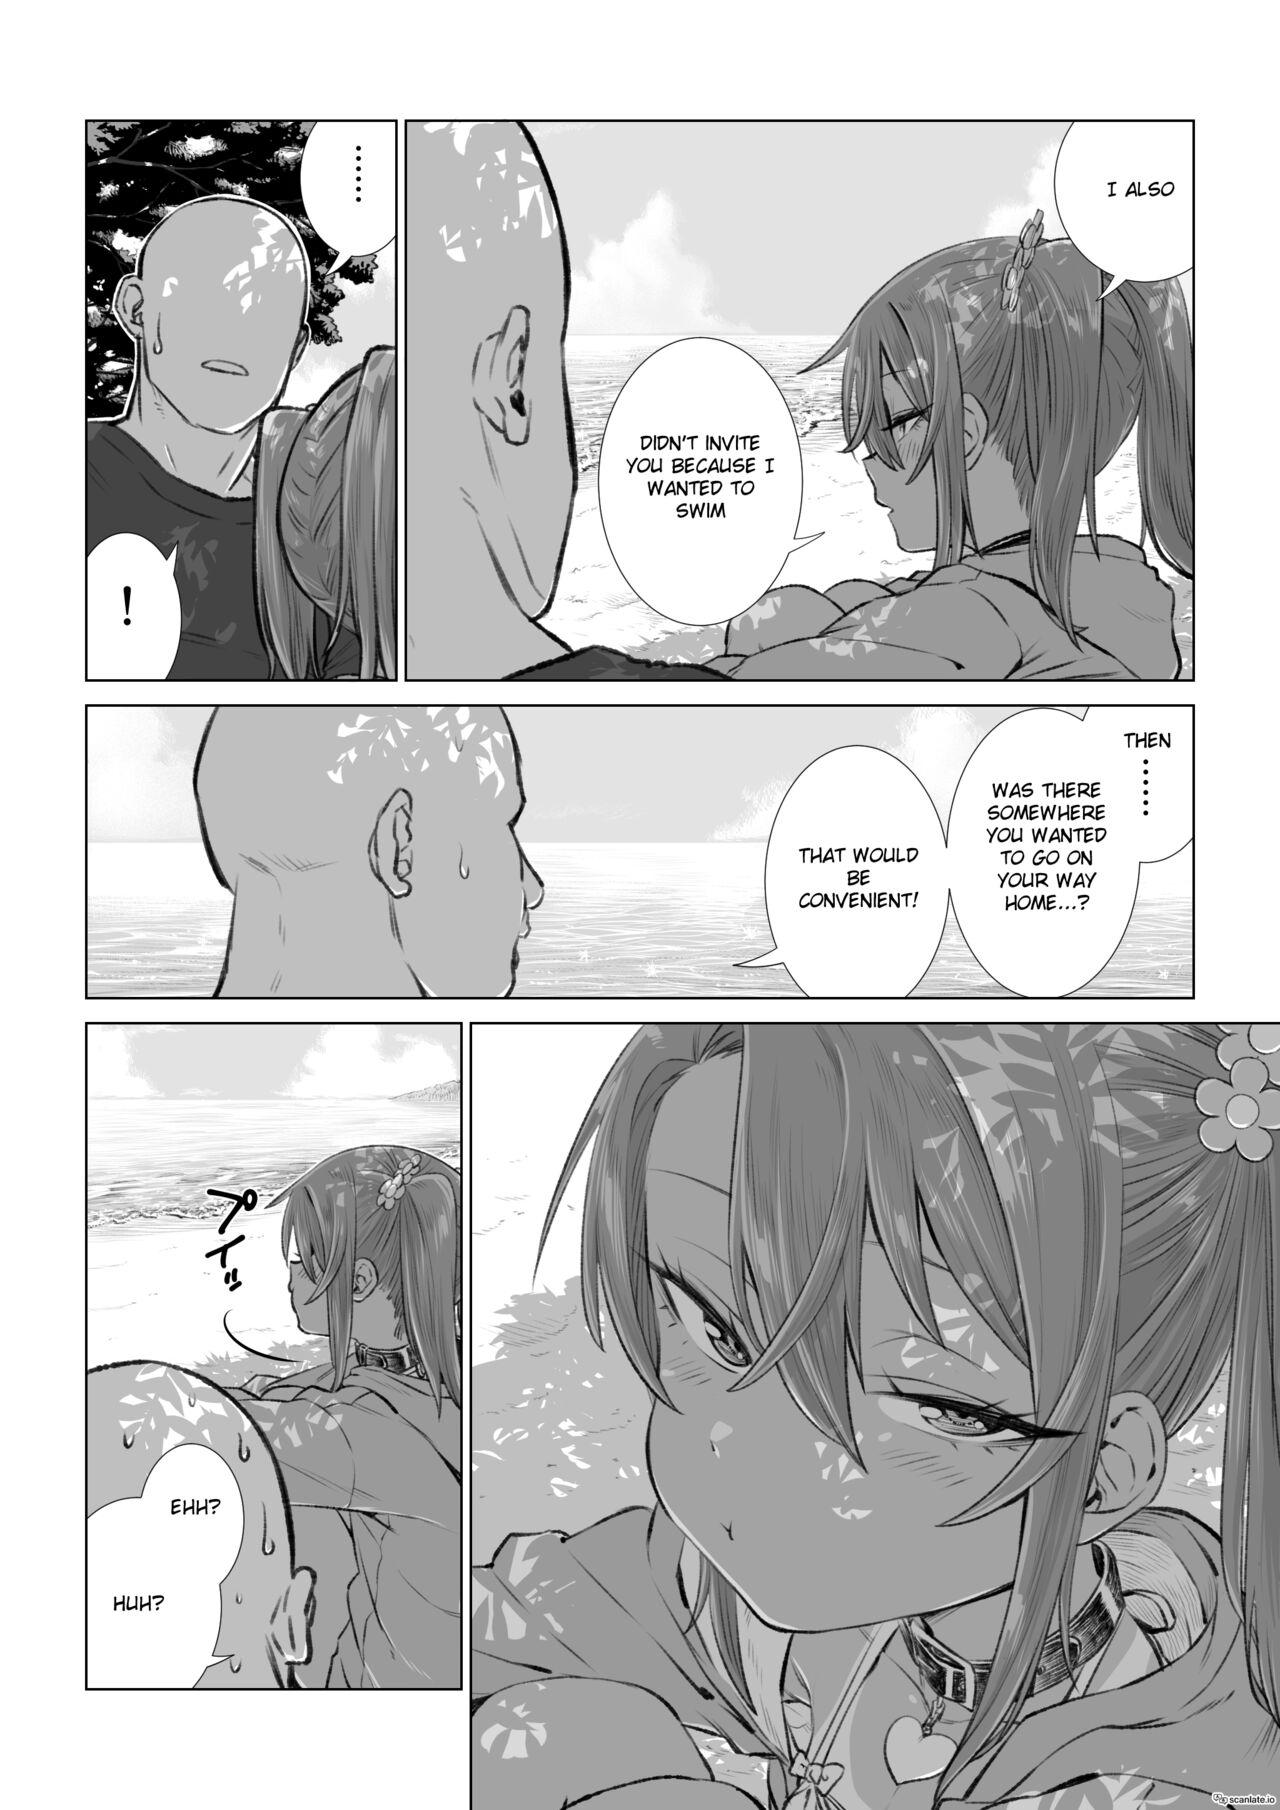 Yuma-chan and the Sea Part 2 5